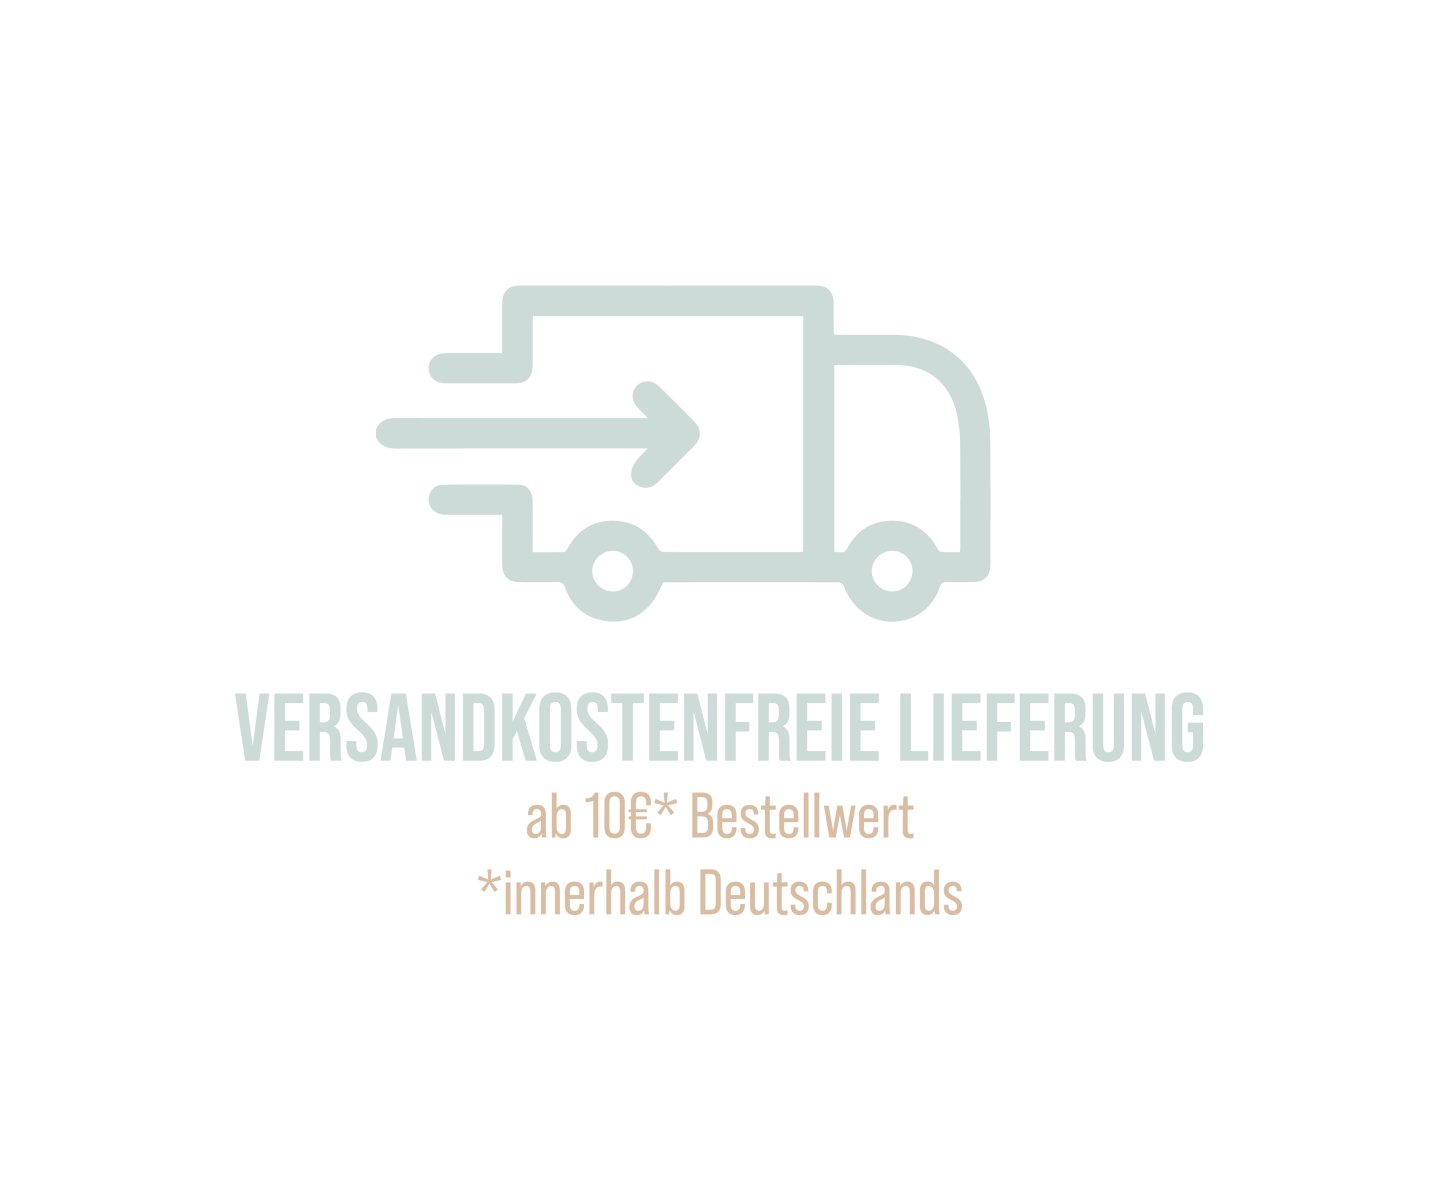 Wir liefern Versandkostenfreie ab 10 Euro Bestellwert innerhalb Deutschlands.